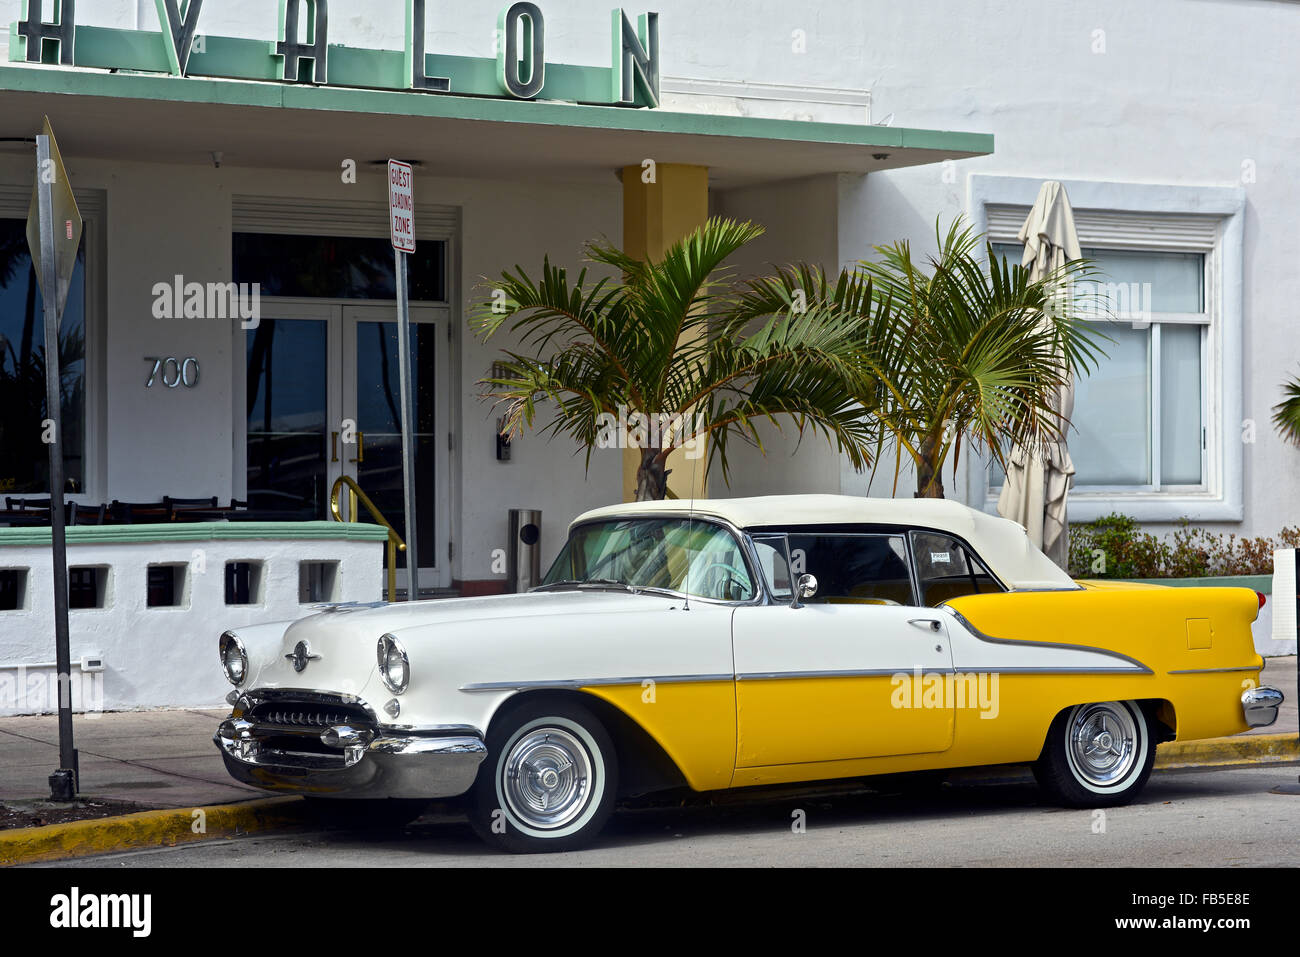 Images de façades d'hôtels et de voitures classiques prises sur Ocean Drive, Miami, USA Banque D'Images